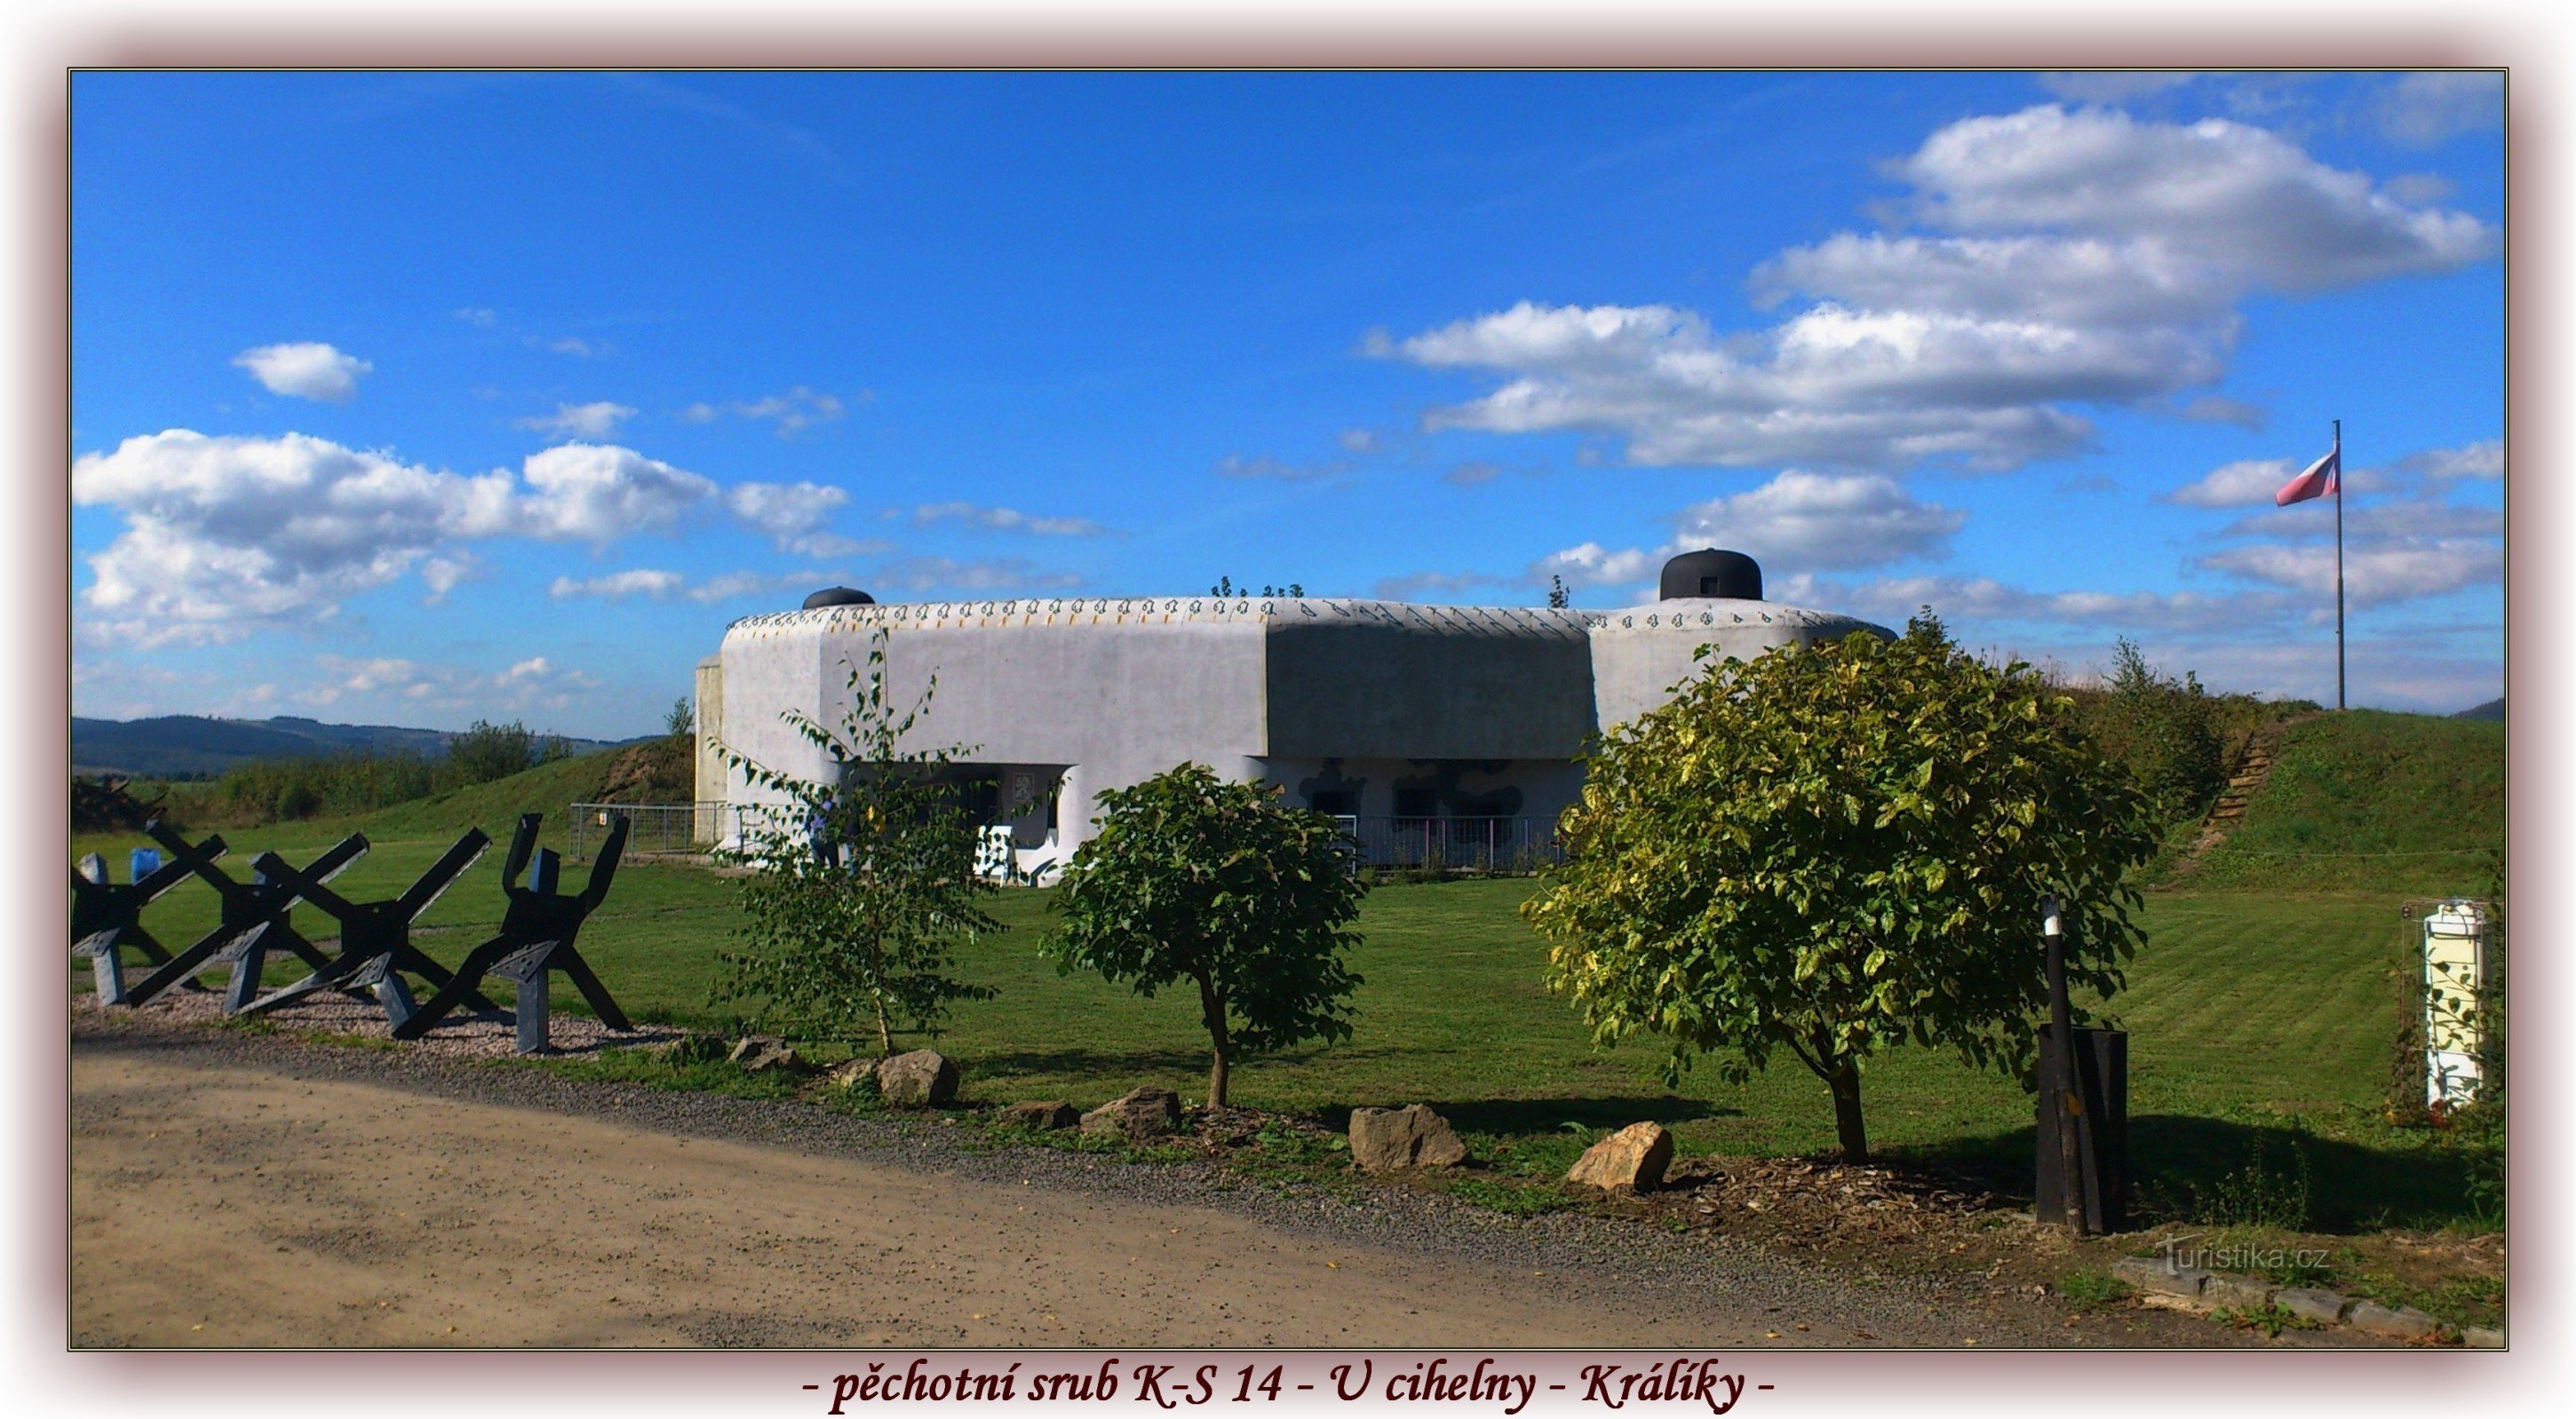 styk 14 museum for de tjekkoslovakiske fæstningsværker